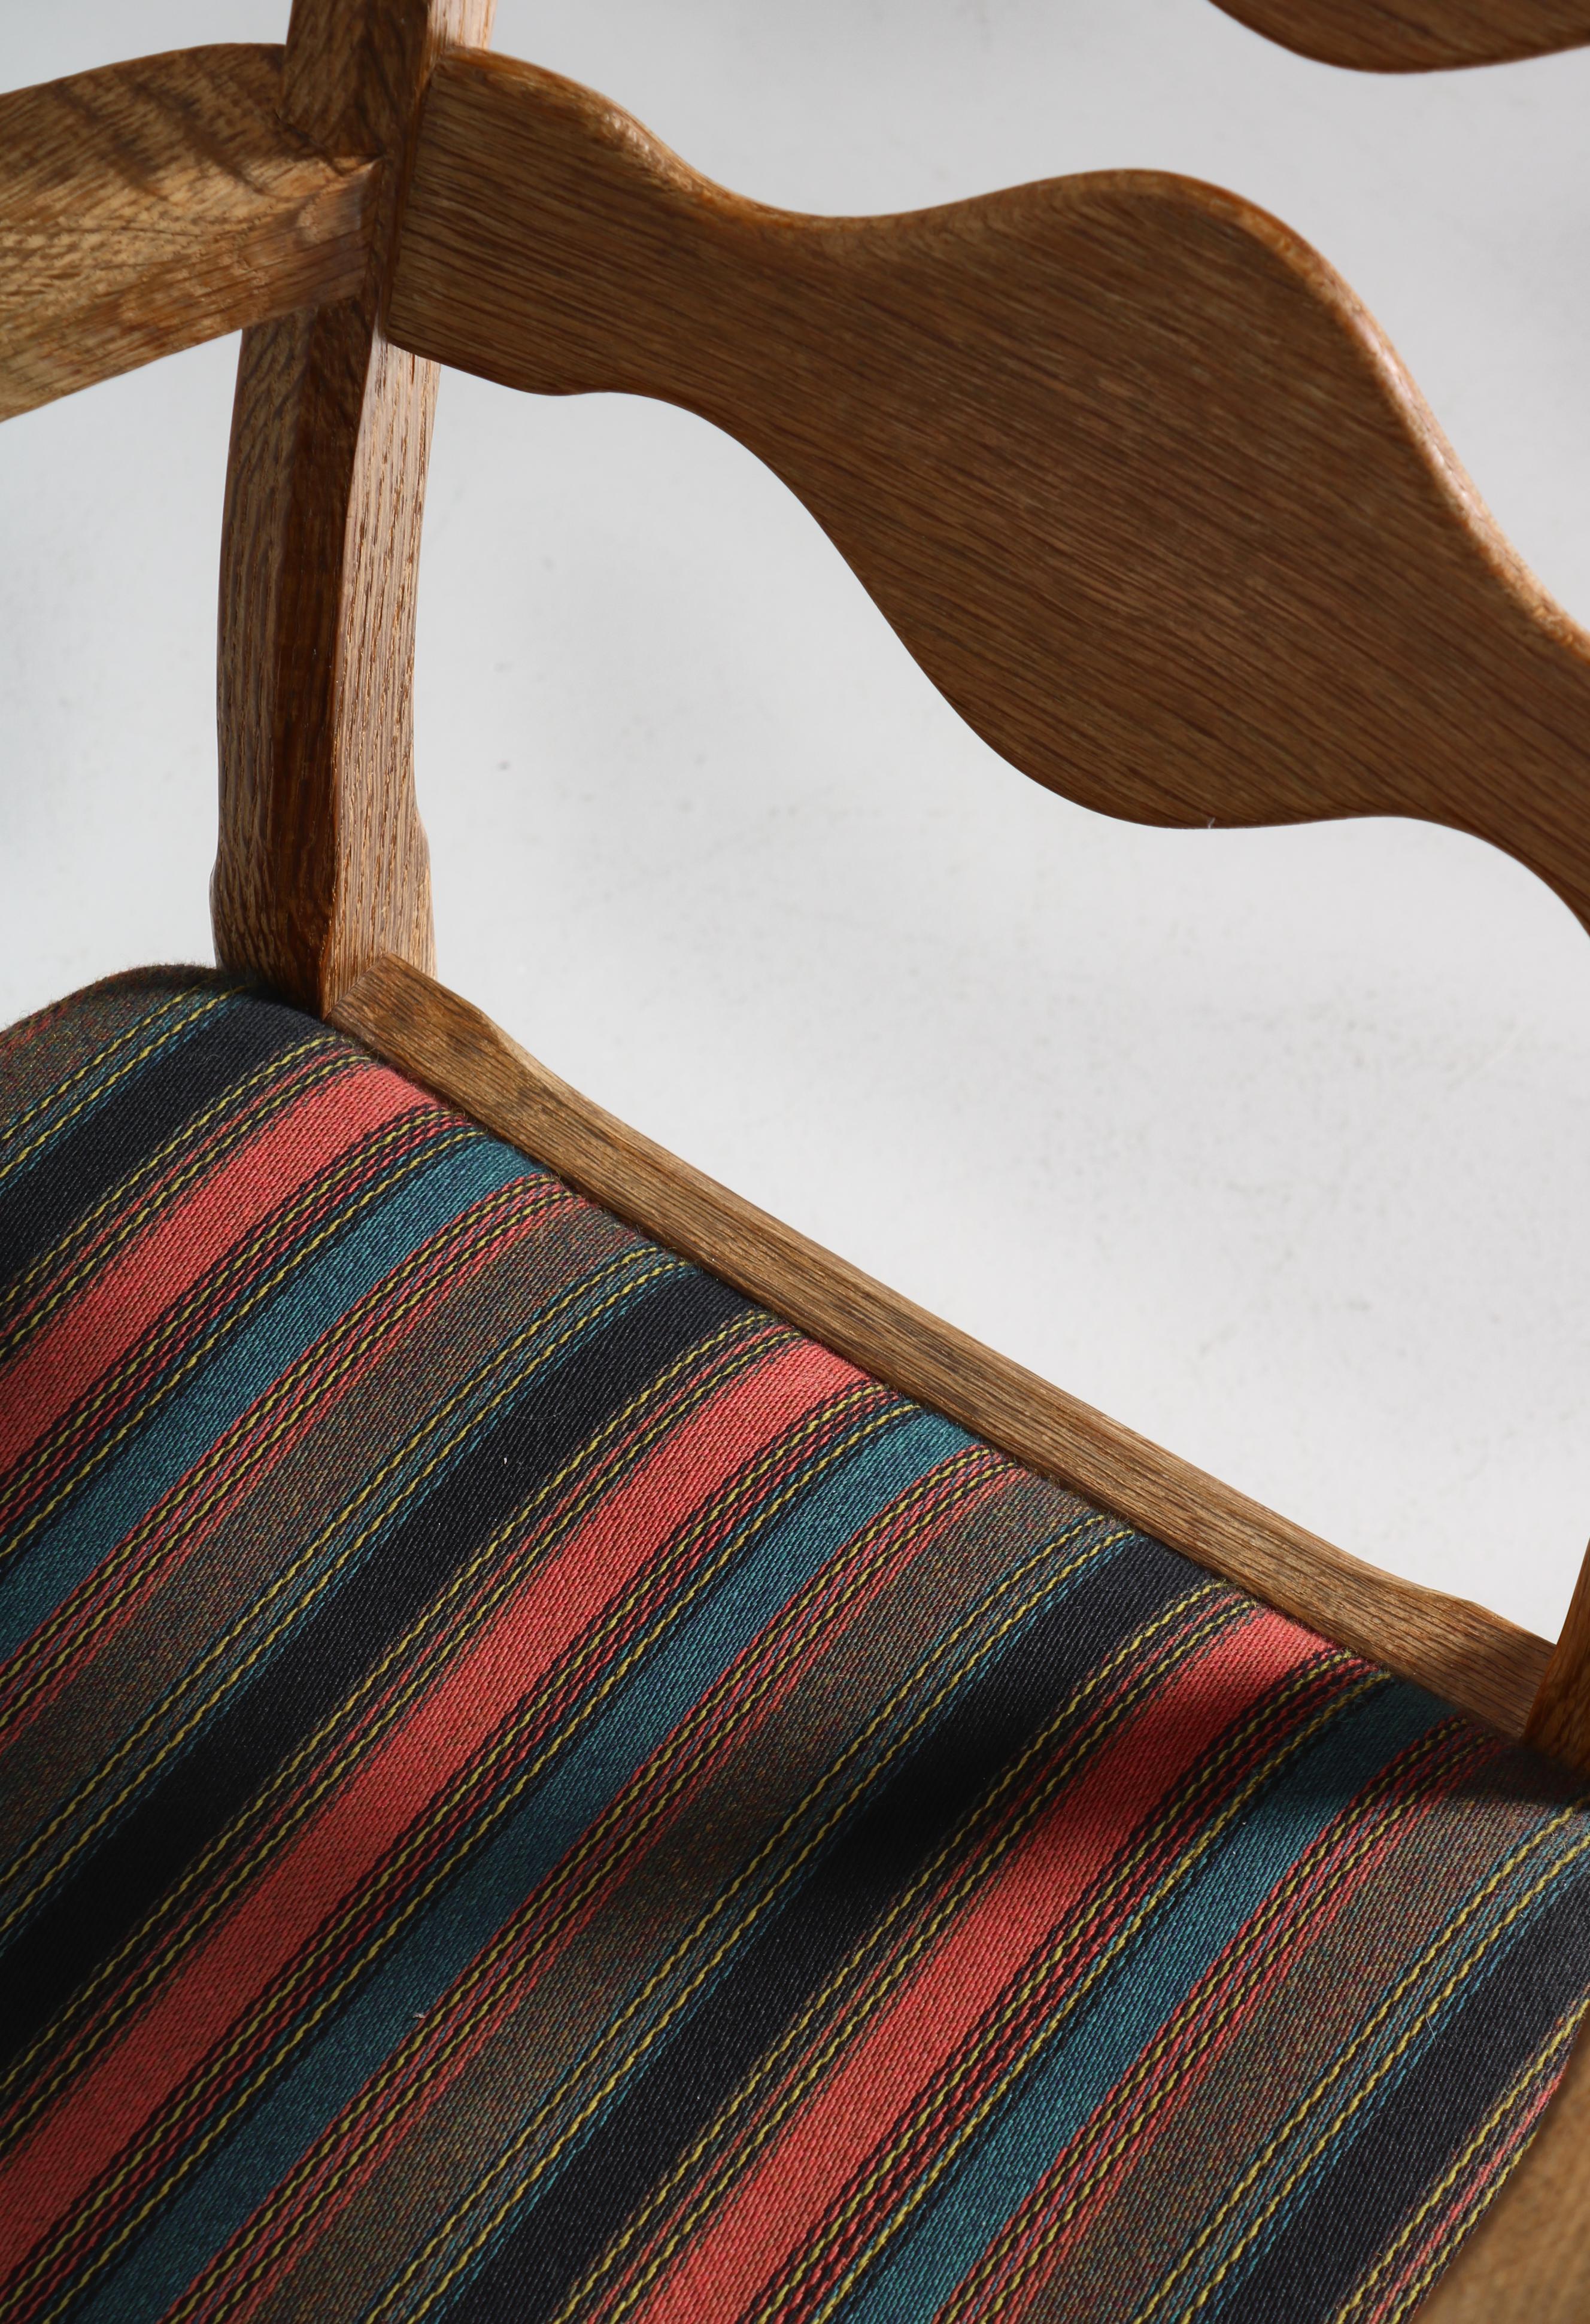 1960s Arm Chair in Oak & Wool Fabric by Henry Kjærnulff, Danish Modern For Sale 7